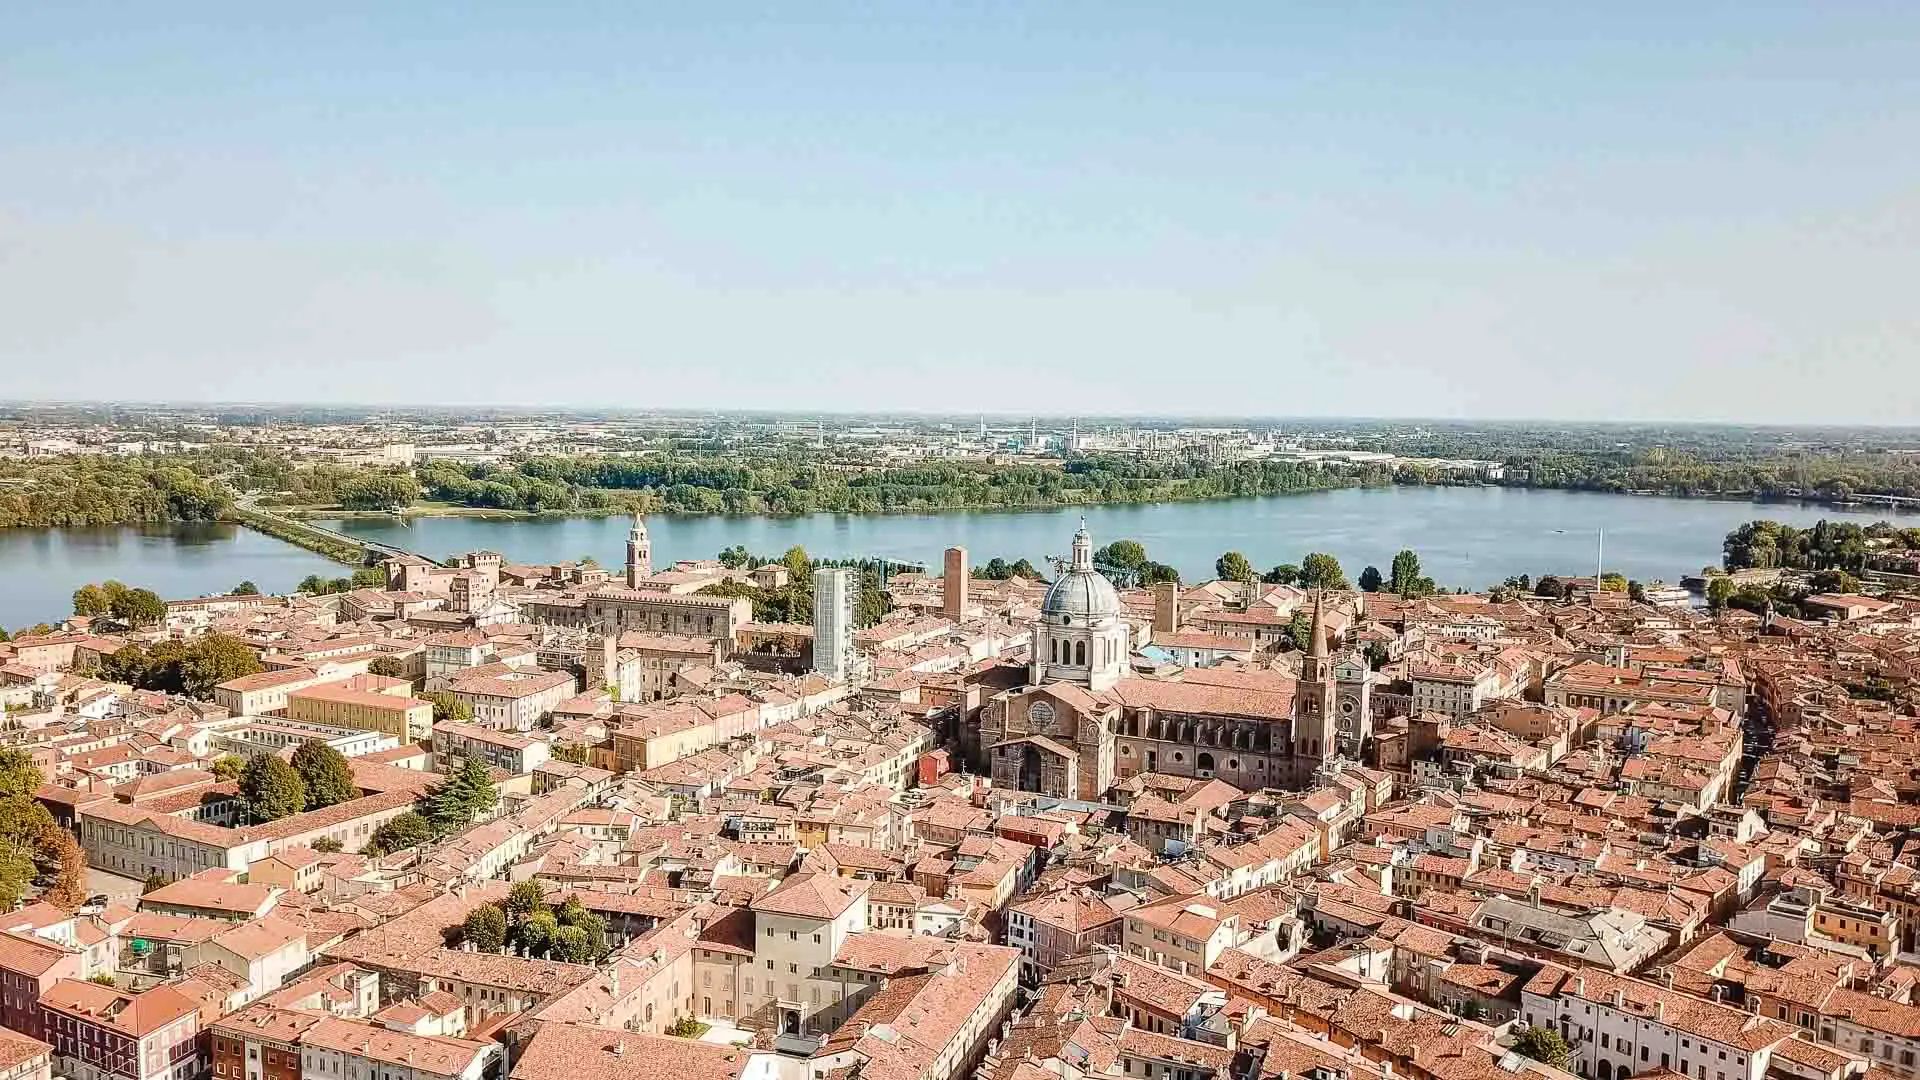 De beste tips voor een stedentrip Mantova (Mantua) in Italië